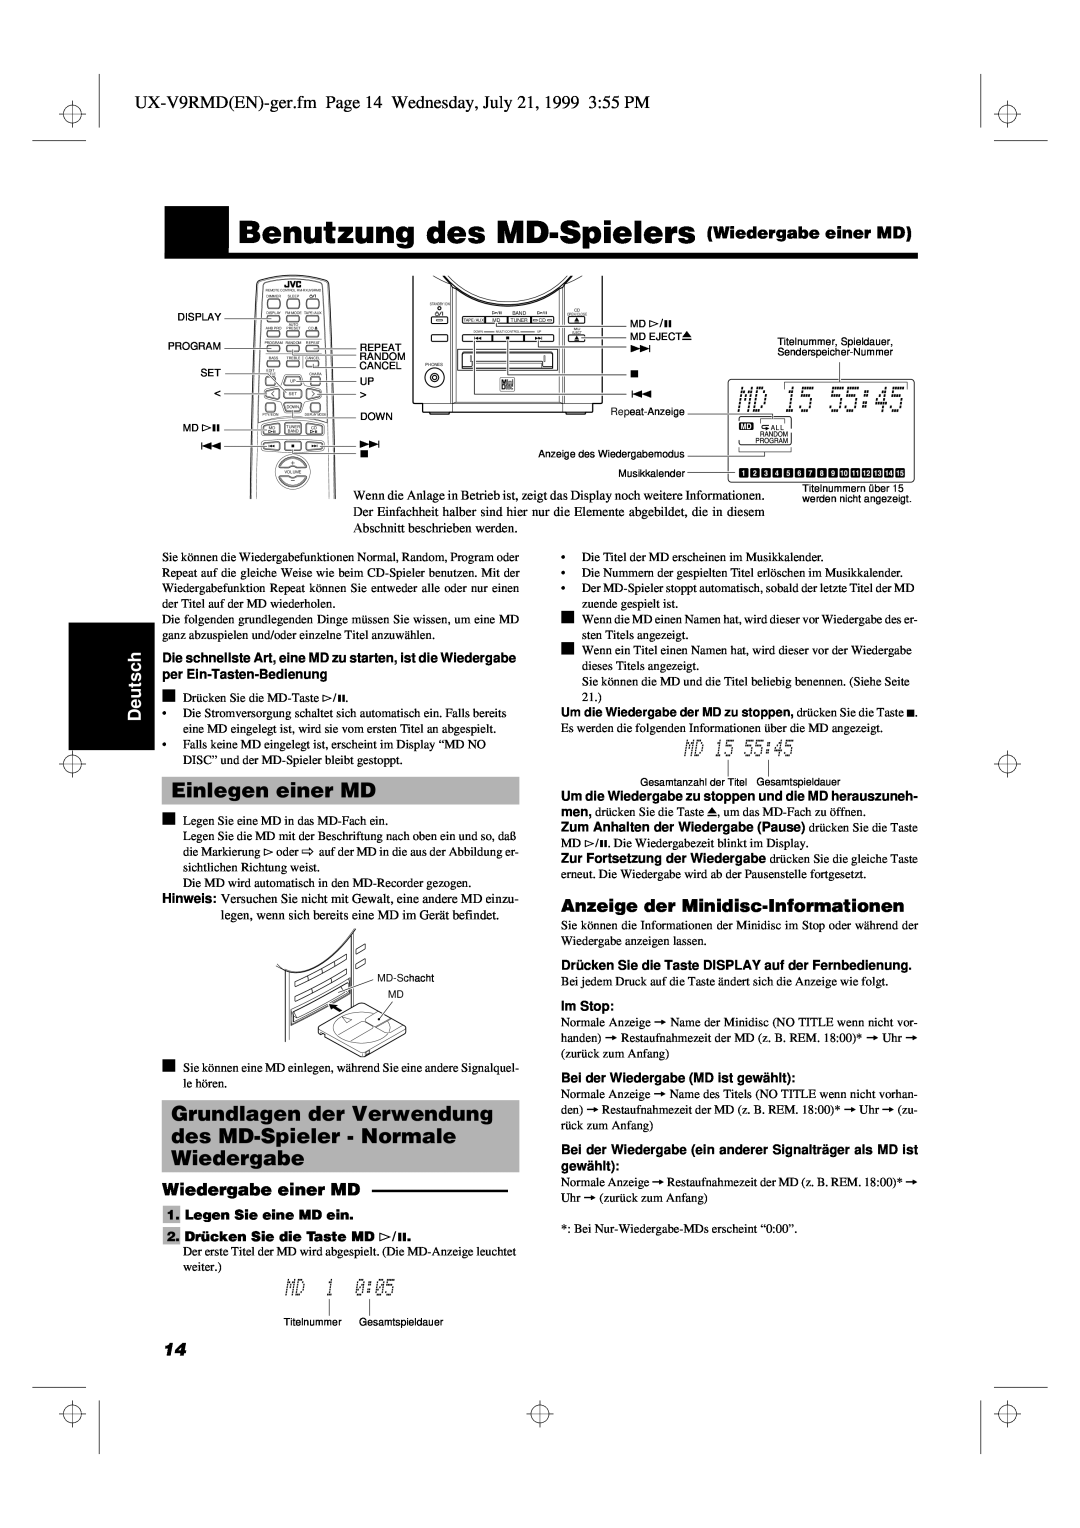 JVC UX-V9RMD Benutzung des MD-Spielers Wiedergabe einer MD, Einlegen einer MD, Anzeige der Minidisc-Informationen, Deutsch 